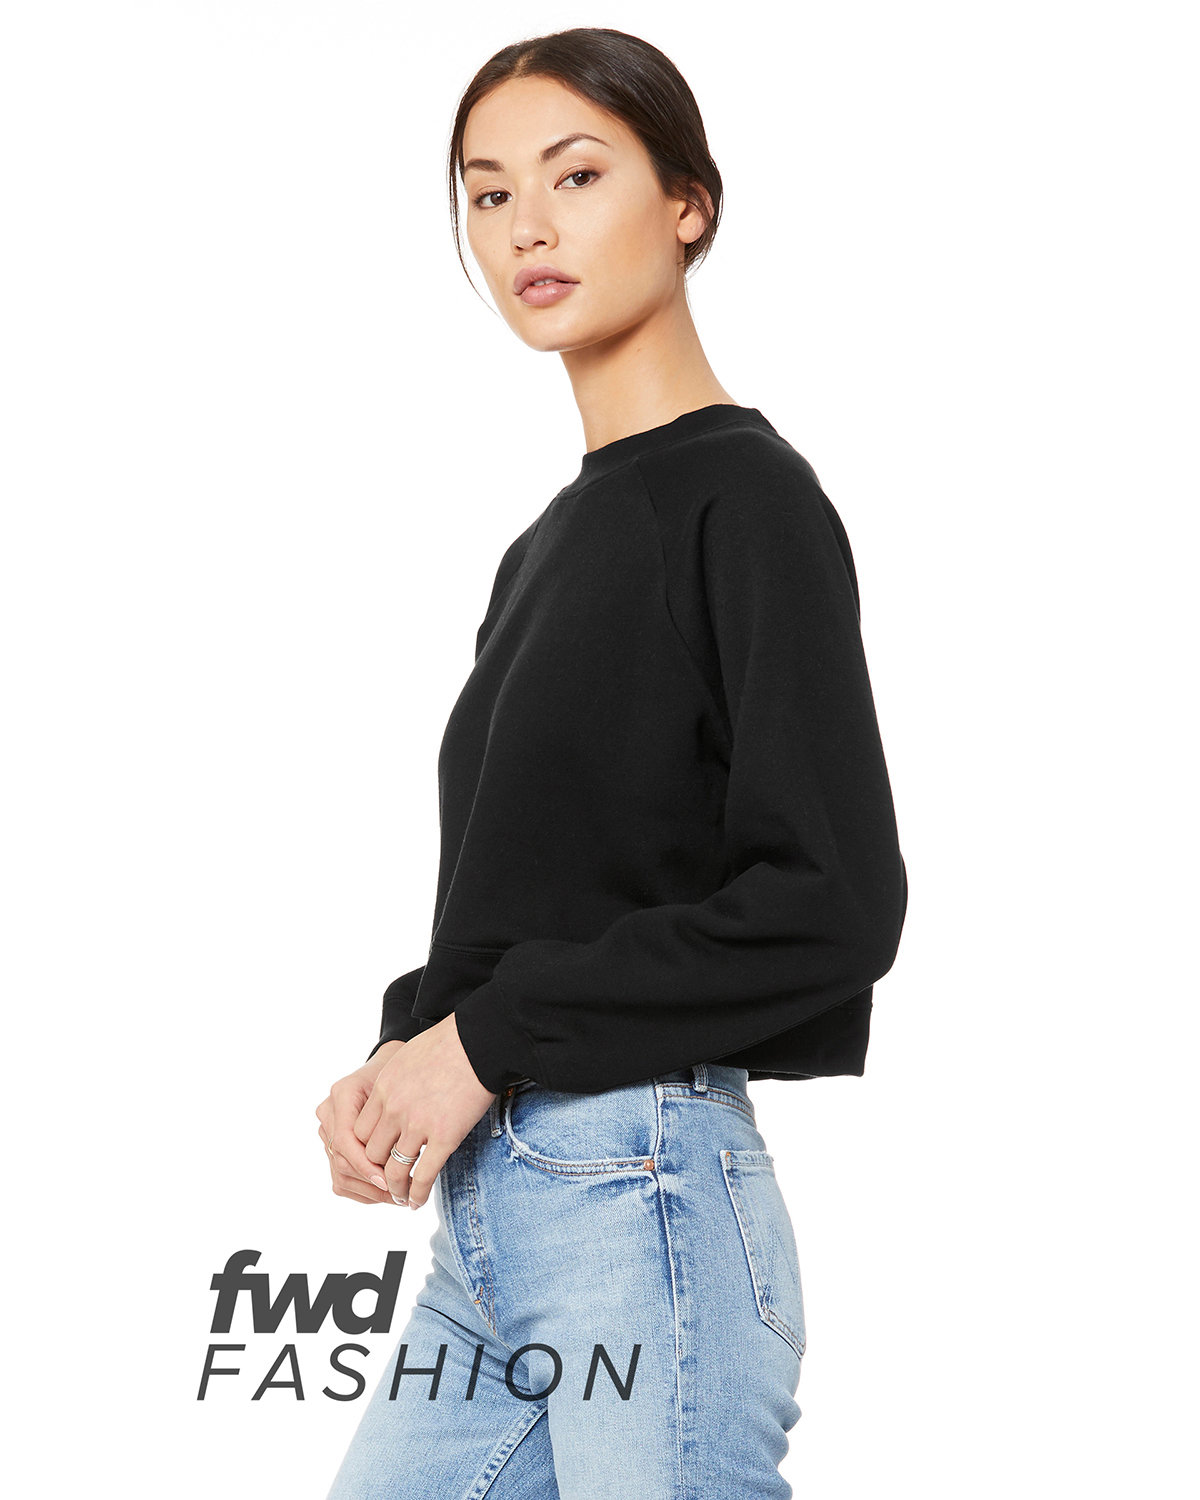 Bella + Canvas FWD Fashion Ladies' Raglan Pullover Fleece | alphabroder